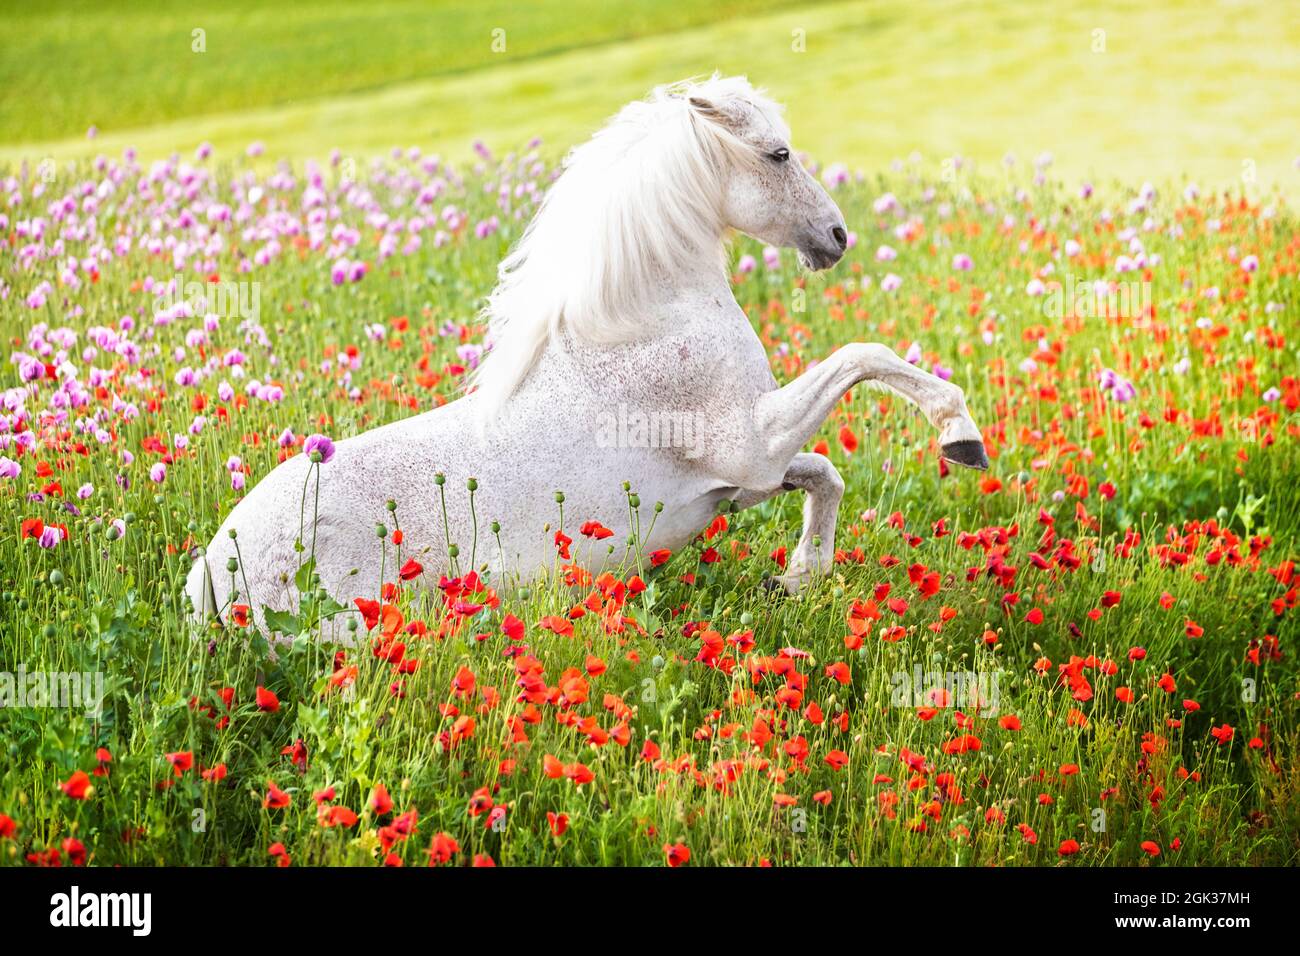 Reines Spanisches Pferd, Andalusisch. Grauer Hengst, der in einem Feld blühender Mohnblumen aufzucht. Deutschland Stockfoto